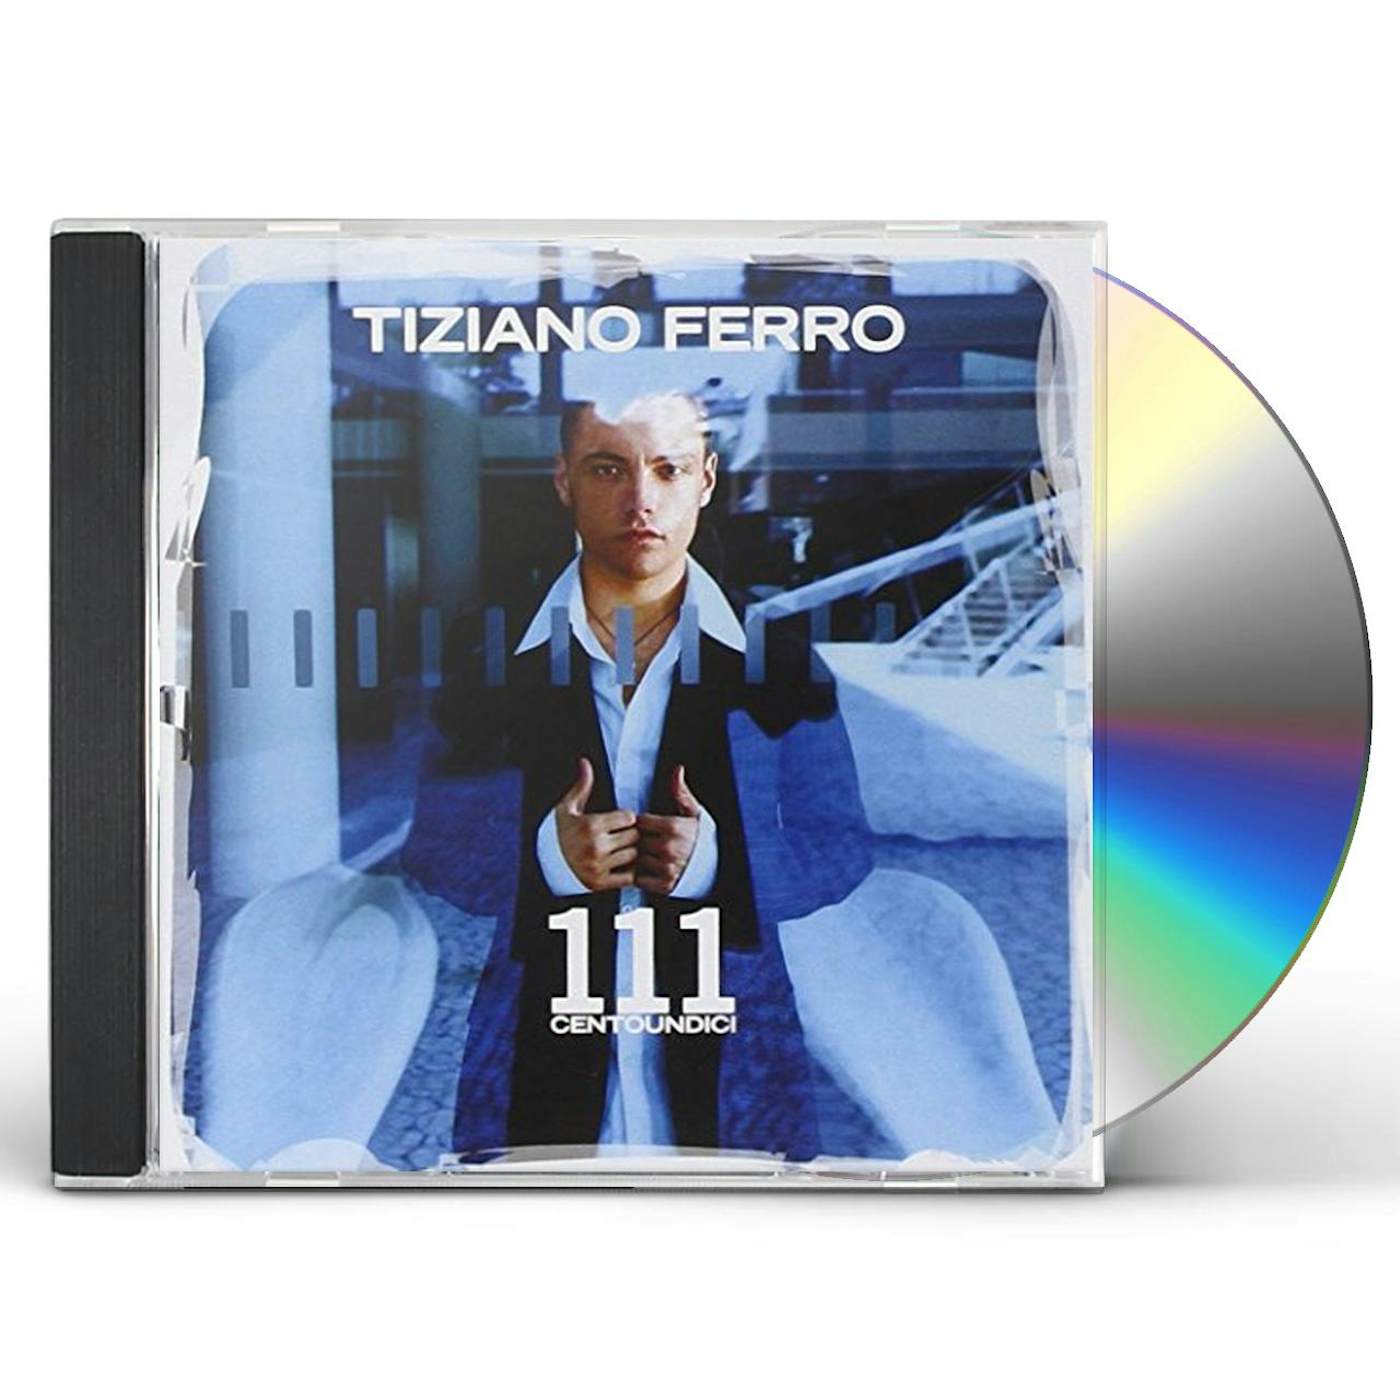 Tiziano Ferro 111 CENTOUNDICI CD